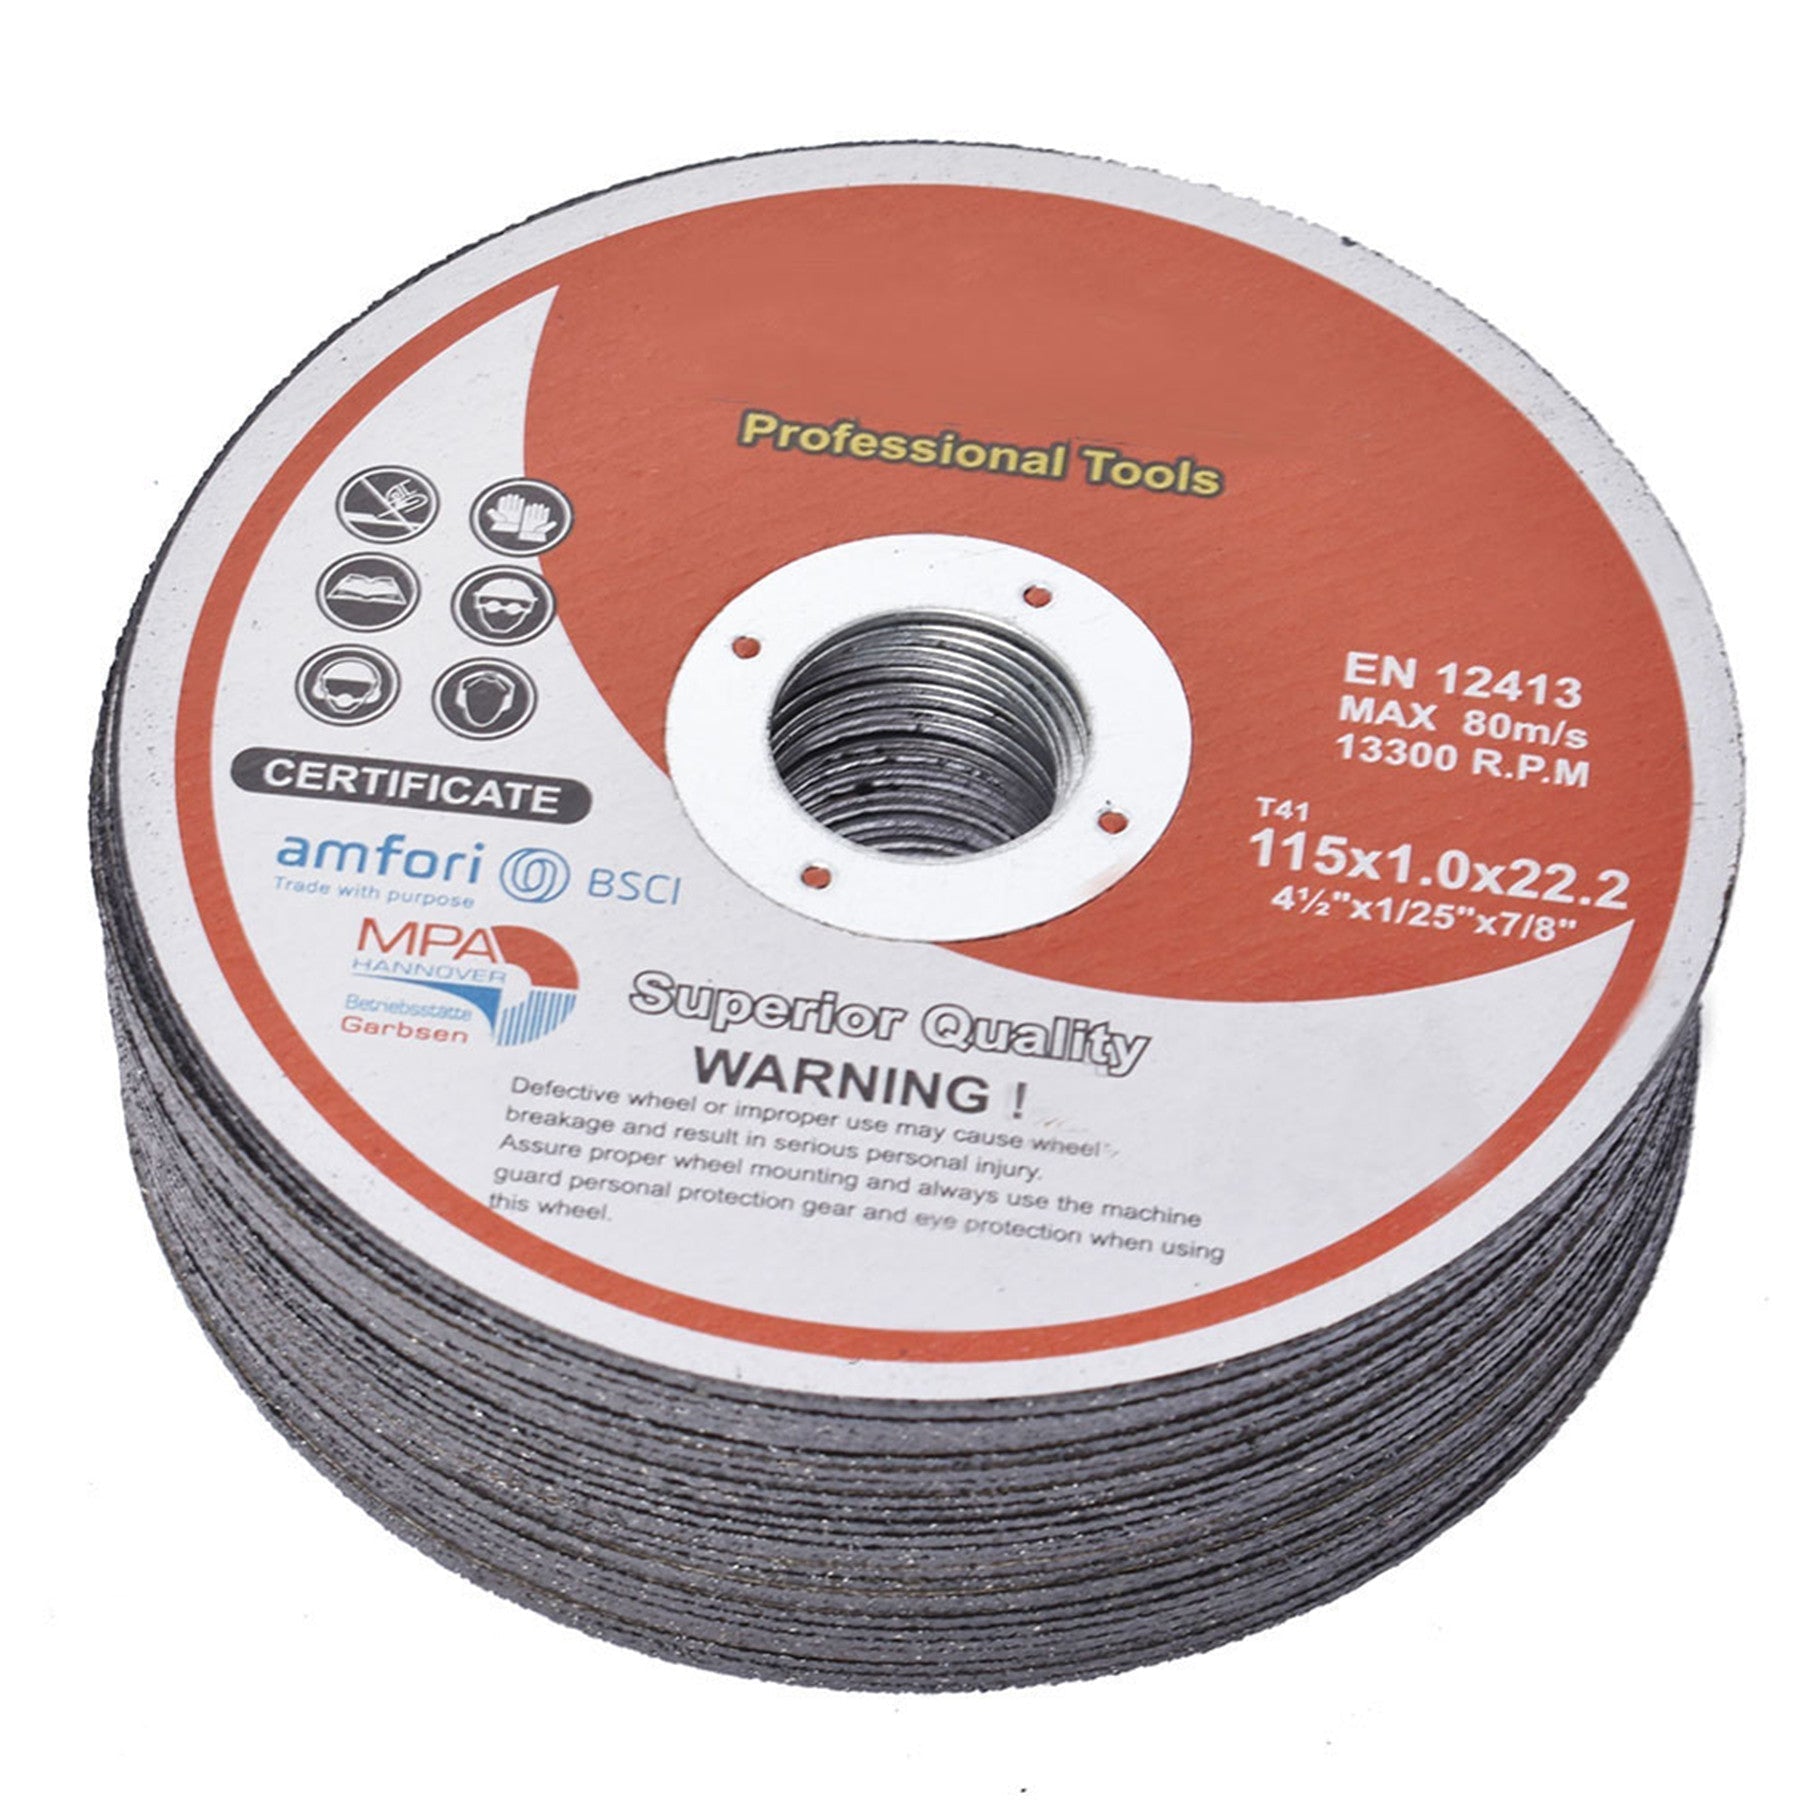 findmall 50Pcs 4.5"x.040"x7/8" Metal Stainless Steel Cut-off Wheel Cutting Discs FINDMALLPARTS